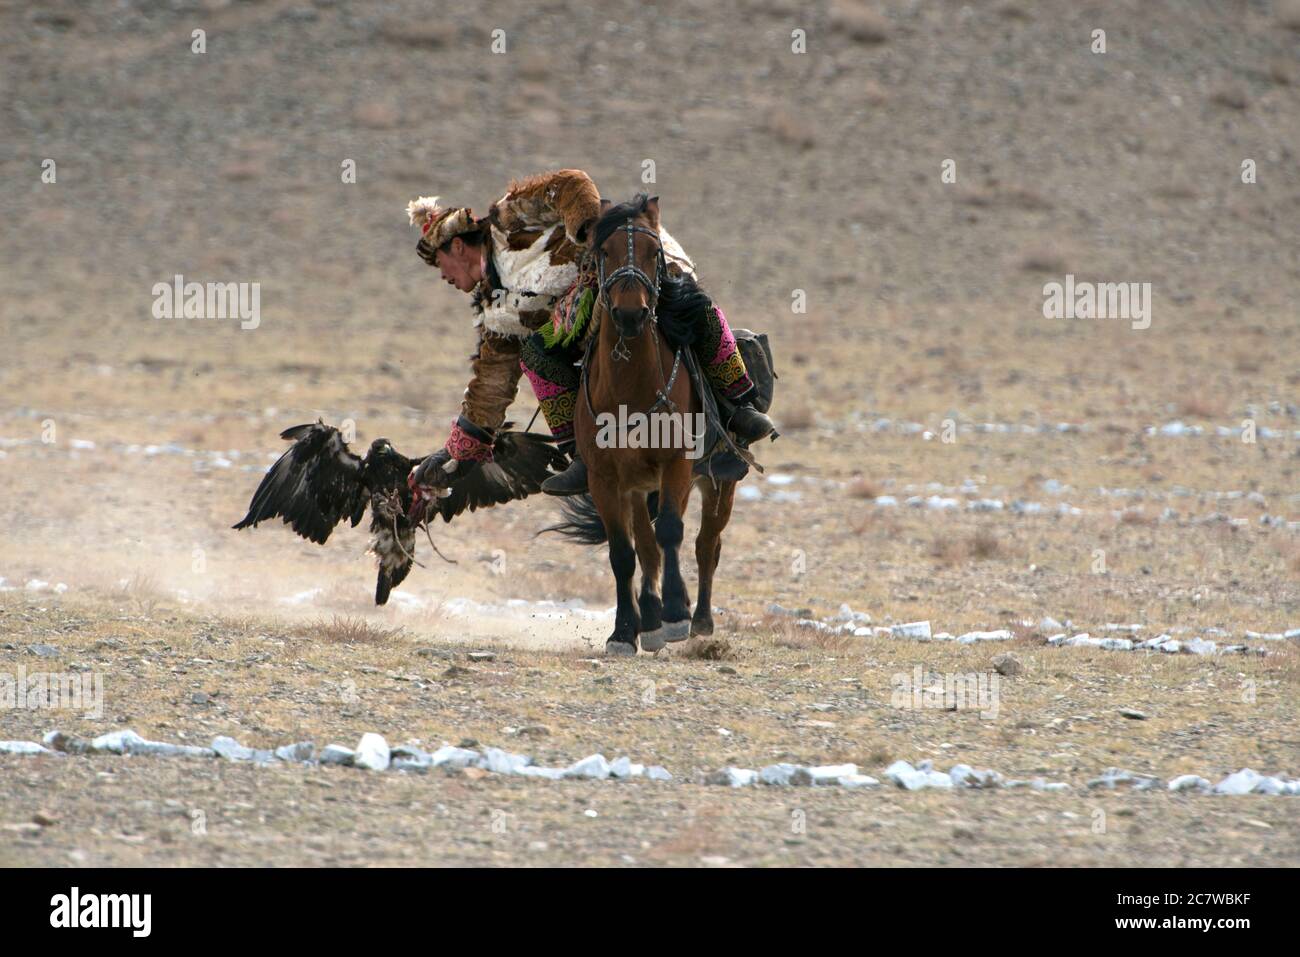 Un nomade kazakh de souche appelle avec succès son aigle doré à atterrir sur son bras au concours du Golden Eagle Festival à Olgii, dans l'ouest de la Mongolie. Banque D'Images